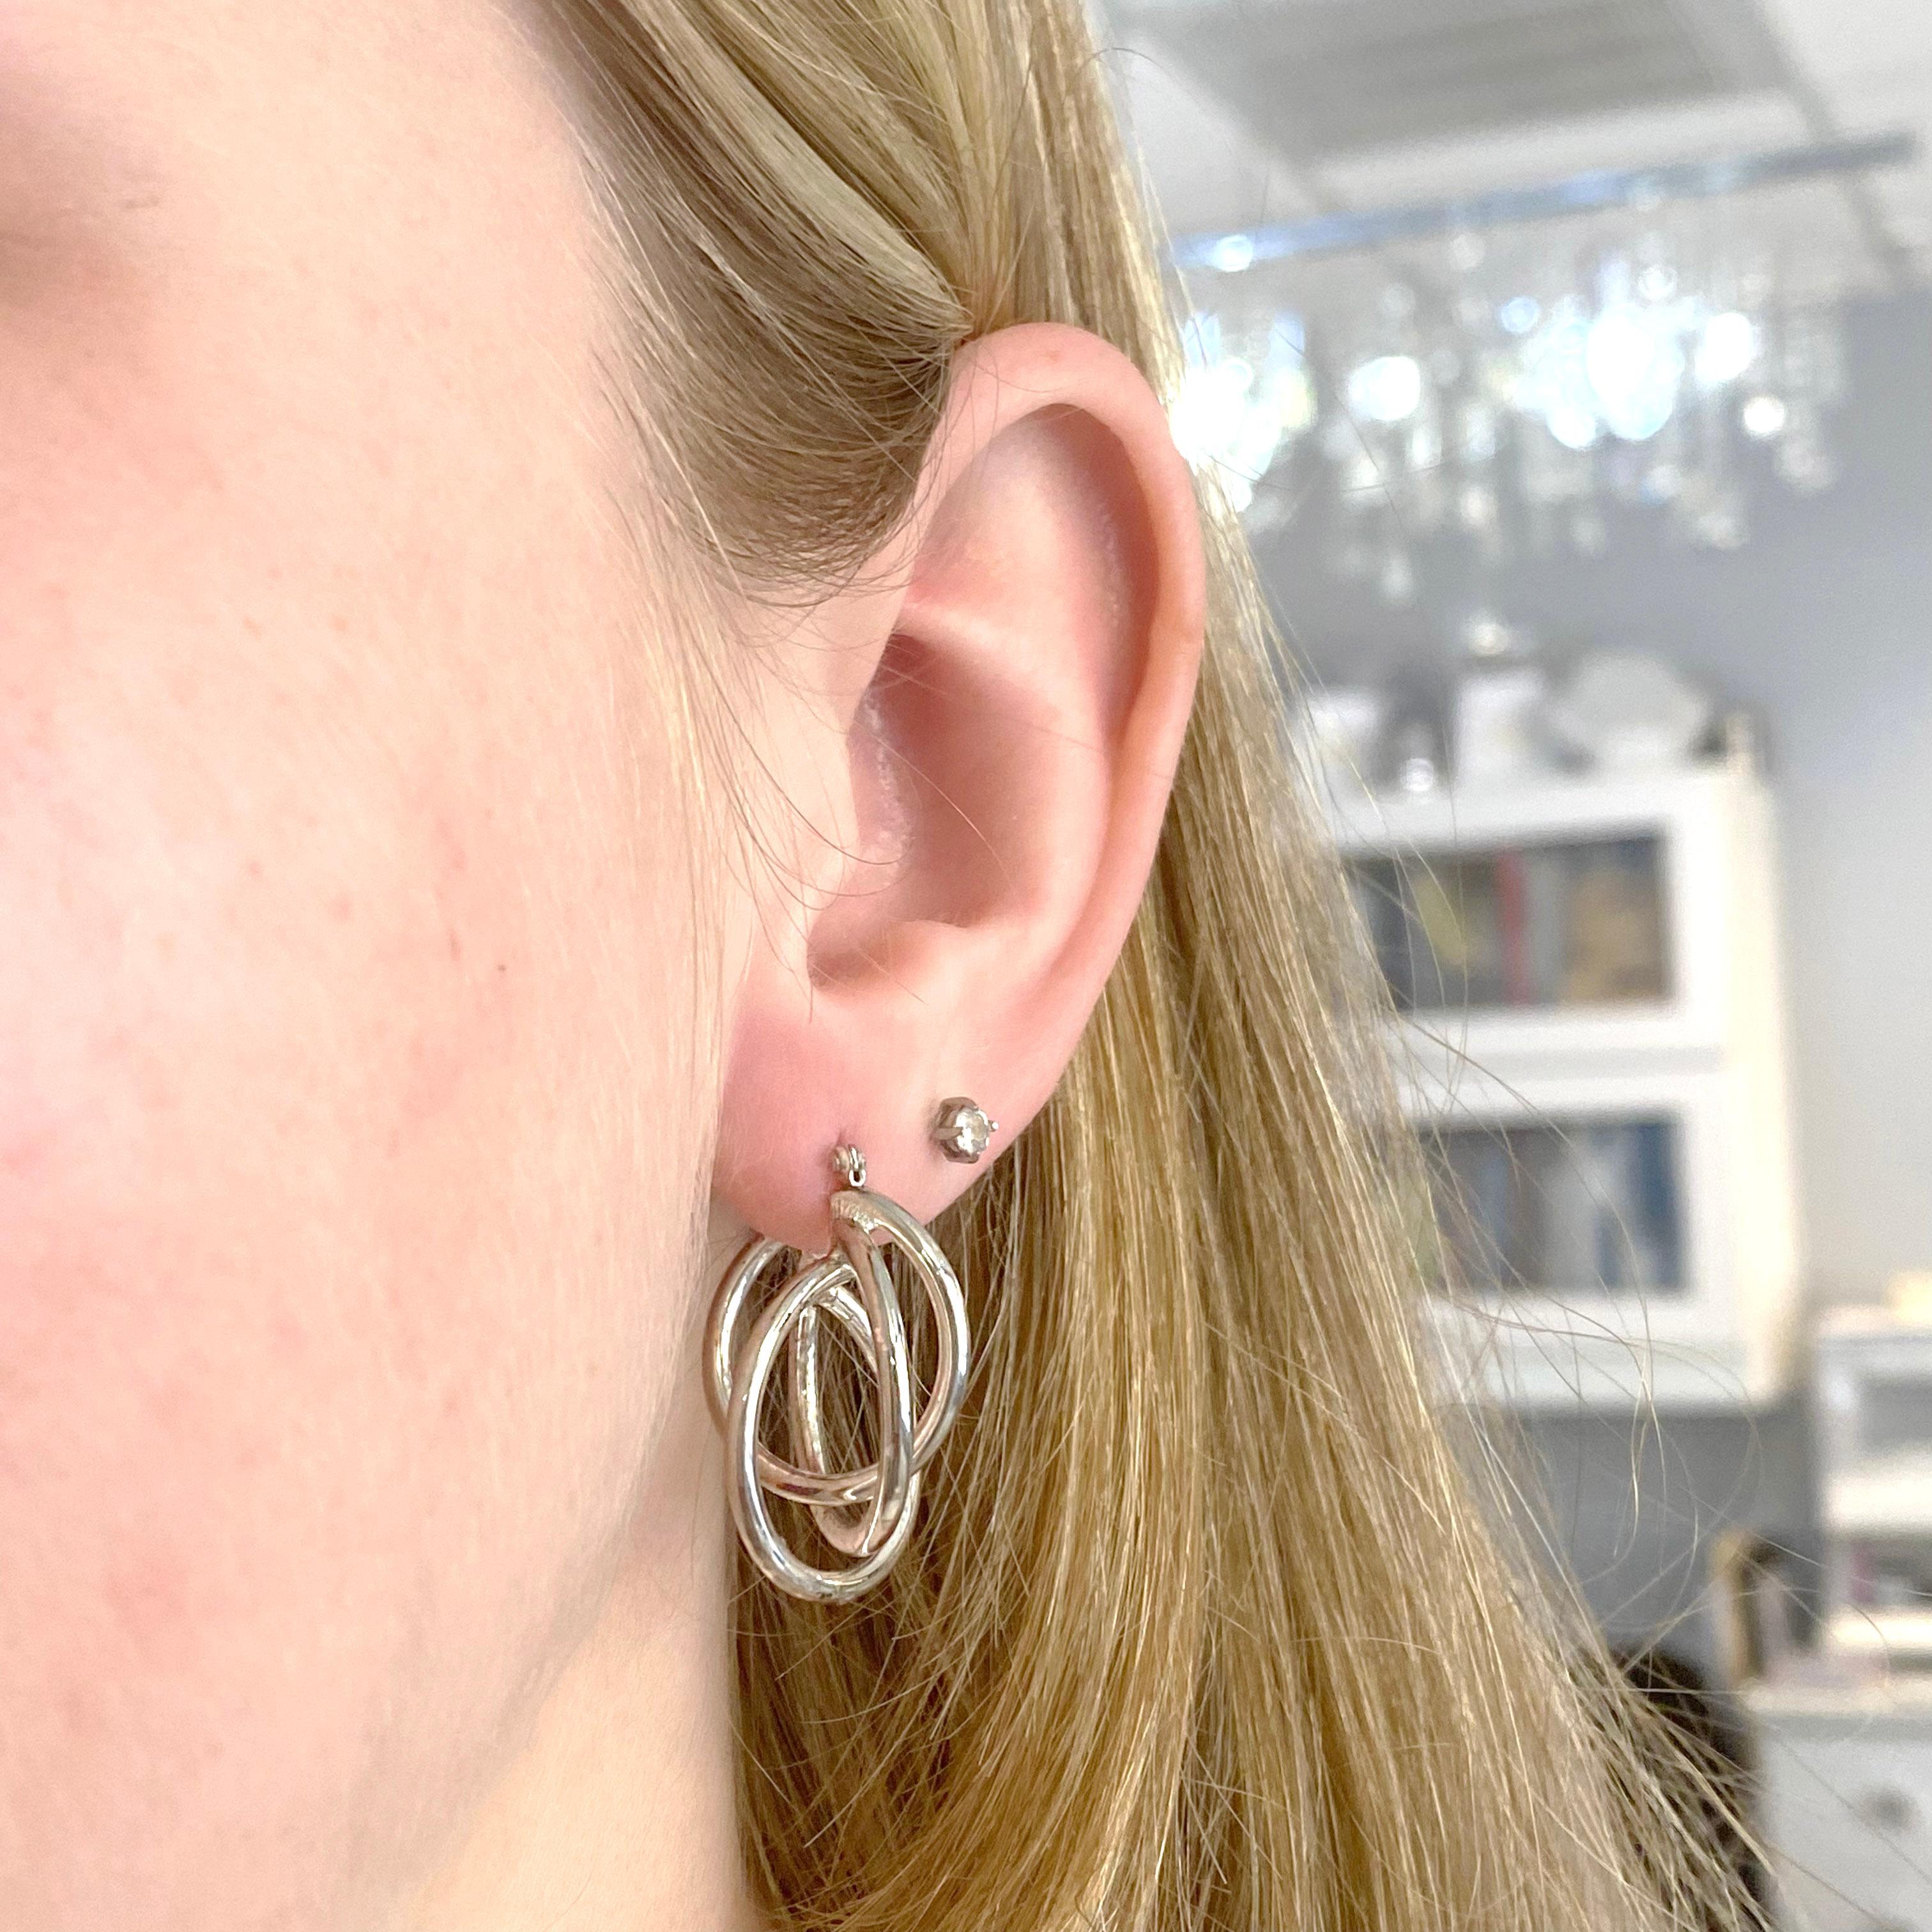 Ohrringe: 1 Satz
Metallqualität: Sterling Silber
Ohrring Typ: Bügel
Verschluss Typ: Scharnier
Ohrring Länge: 26,2 Millimeter
Reifentiefe: 21,4 Millimeter
Ohrring Breite: 21,7 Millimeter 
Gesamtgewicht: 9,1 Gramm